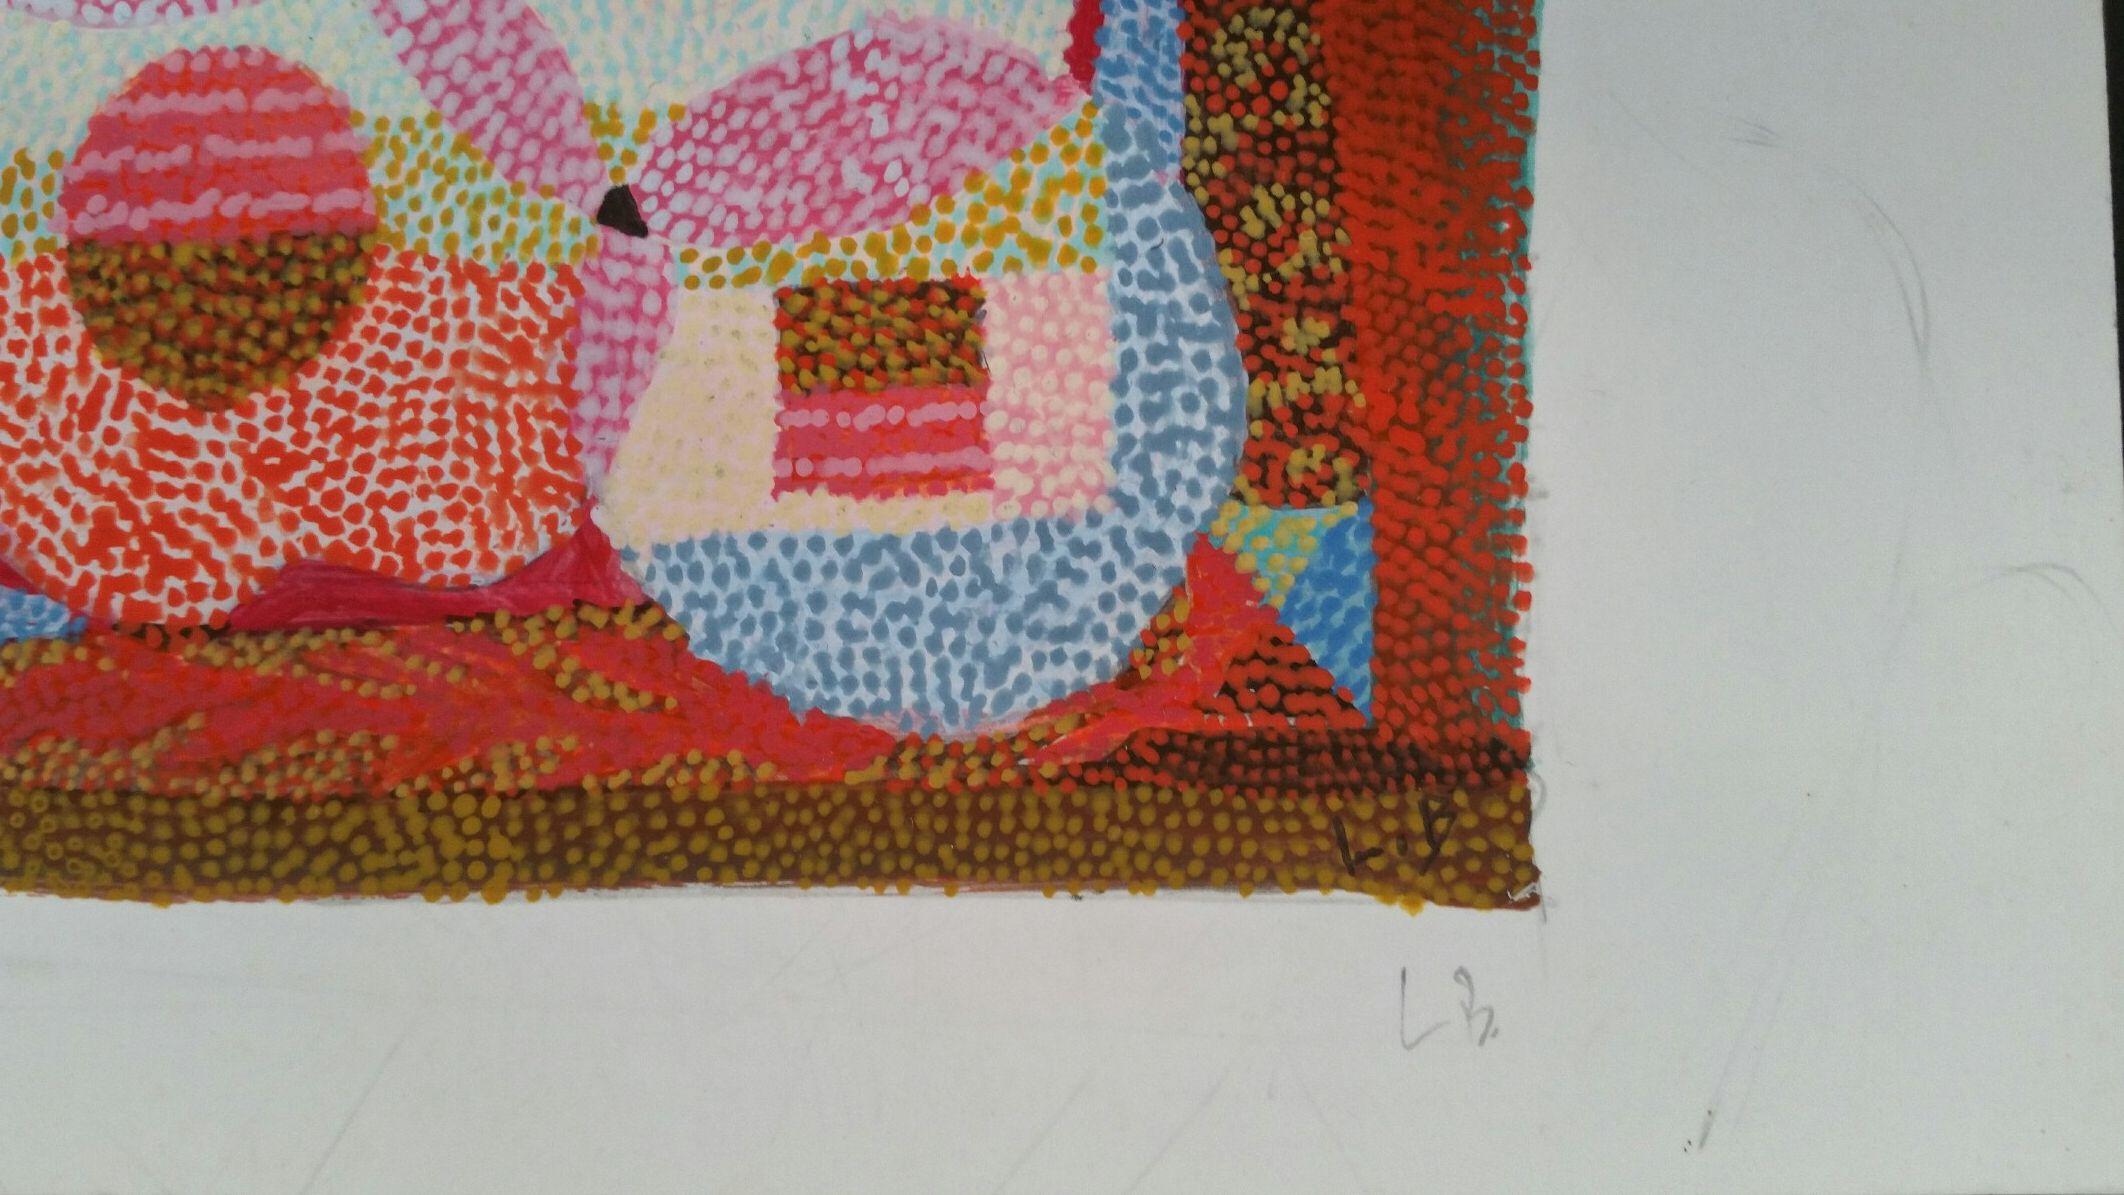 Dessin abstrait pointilliste
par Louis Bellon (français 1908-1998)
paraphé en bas à droite dans l'image et de nouveau dans la marge
peinture à la gouache sur papier, non encadrée
croquis inachevé au verso
mesures : 4.4 x 5.6 pouces (en tout, la